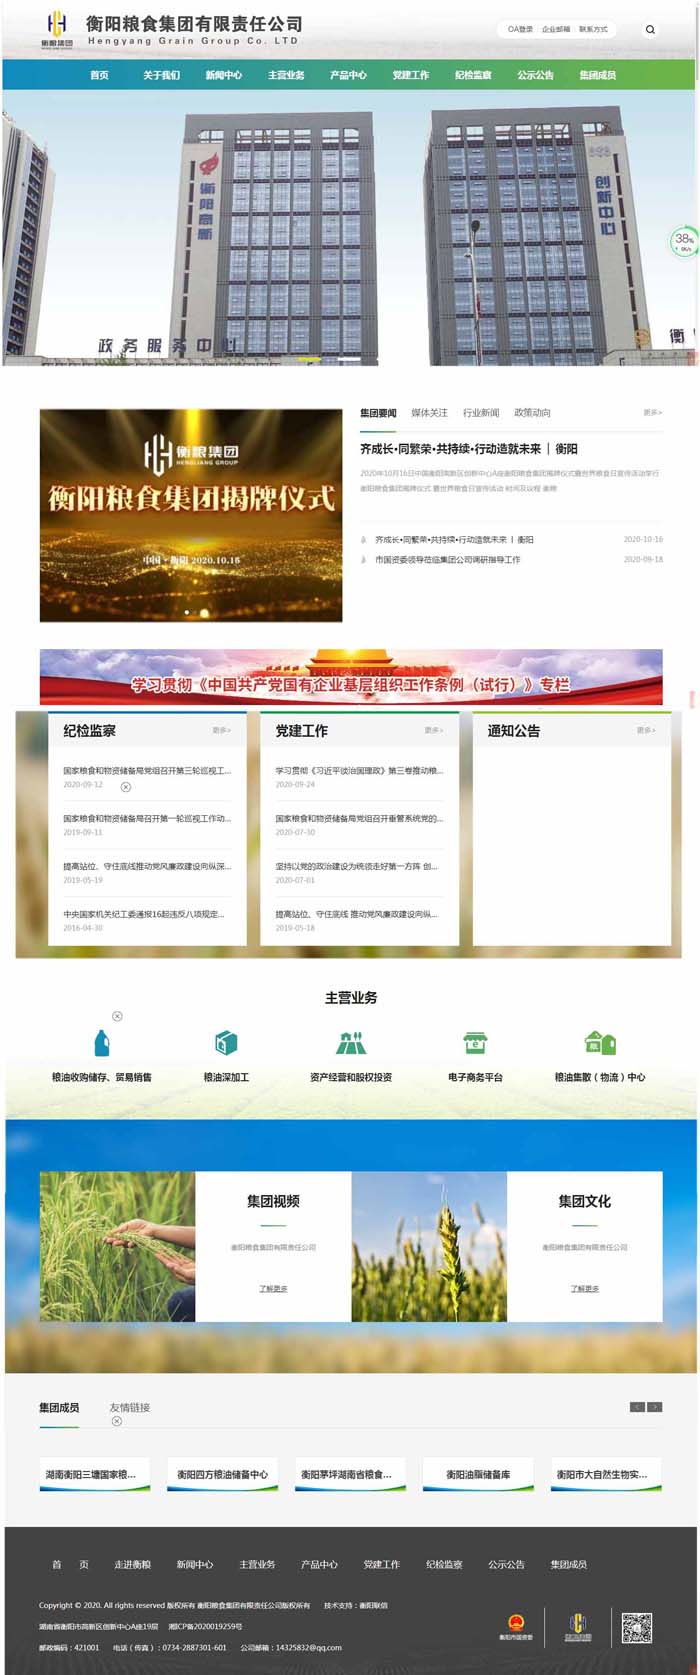 衡阳粮食集团有限责任公司官网、官微上线